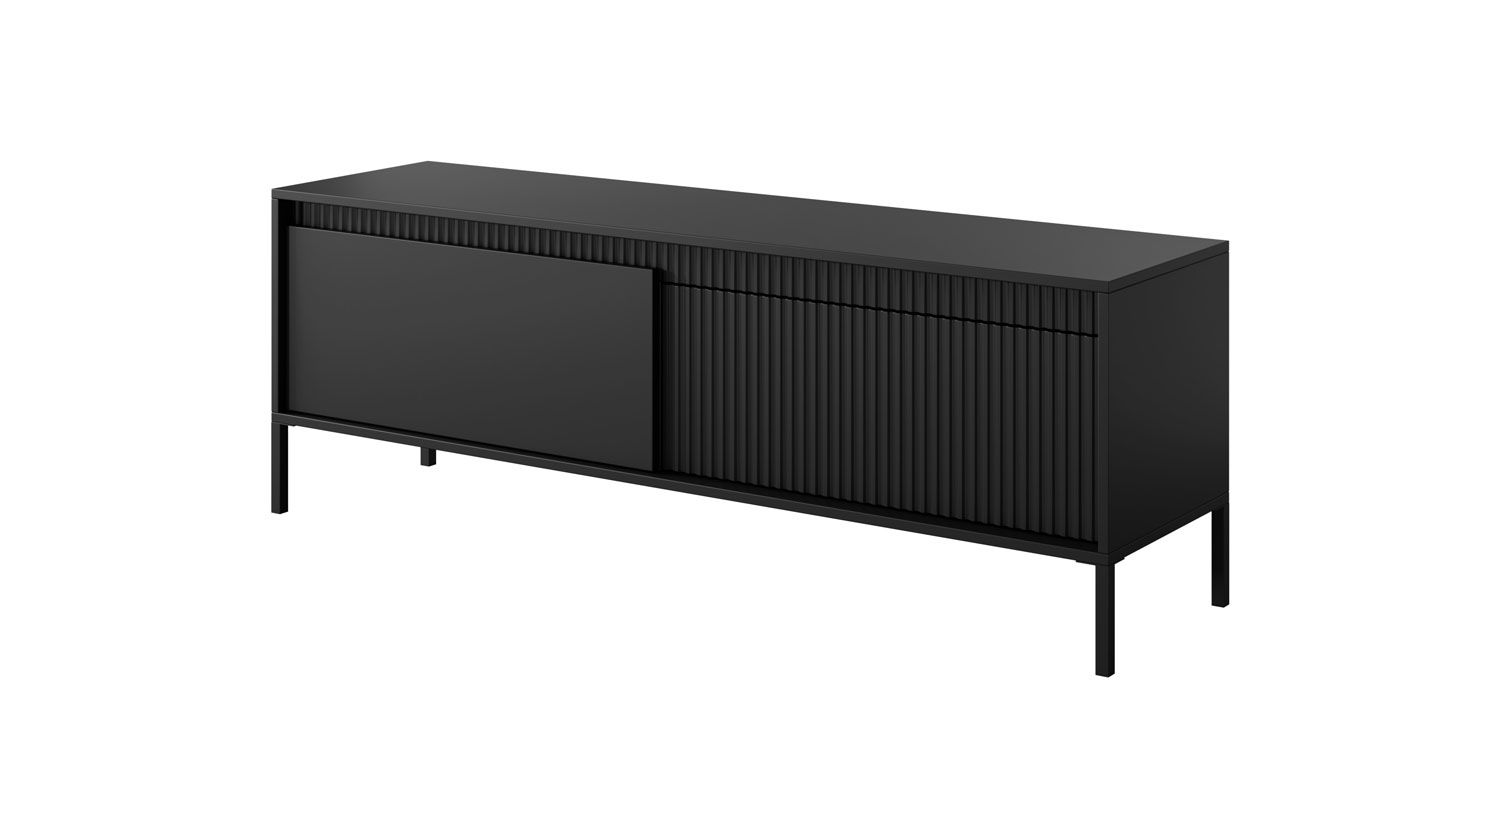 TV-Möbel / TV-Unterschrank mit zwei Kippfächer Balta 10, Farbe: Schwarz, Beine: Metall, Maße: 53 x 153,5 x 39,5 cm, Push-to-open Funktion